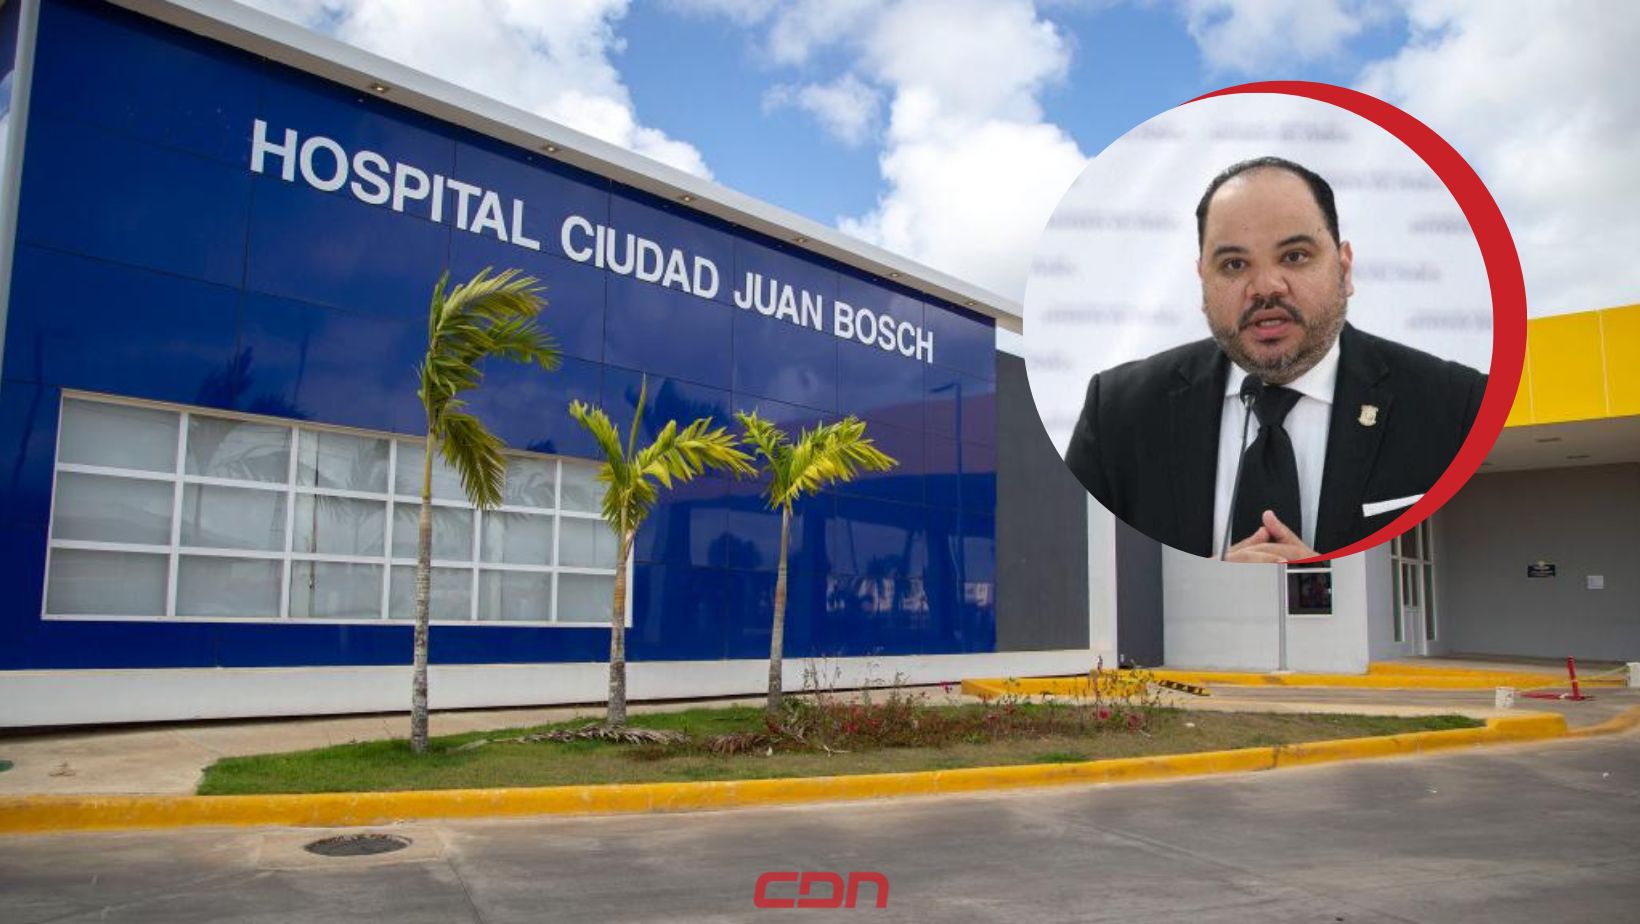 Defensor del Pueblo cita para investigación directora del Hospital Ciudad Juan Bosch